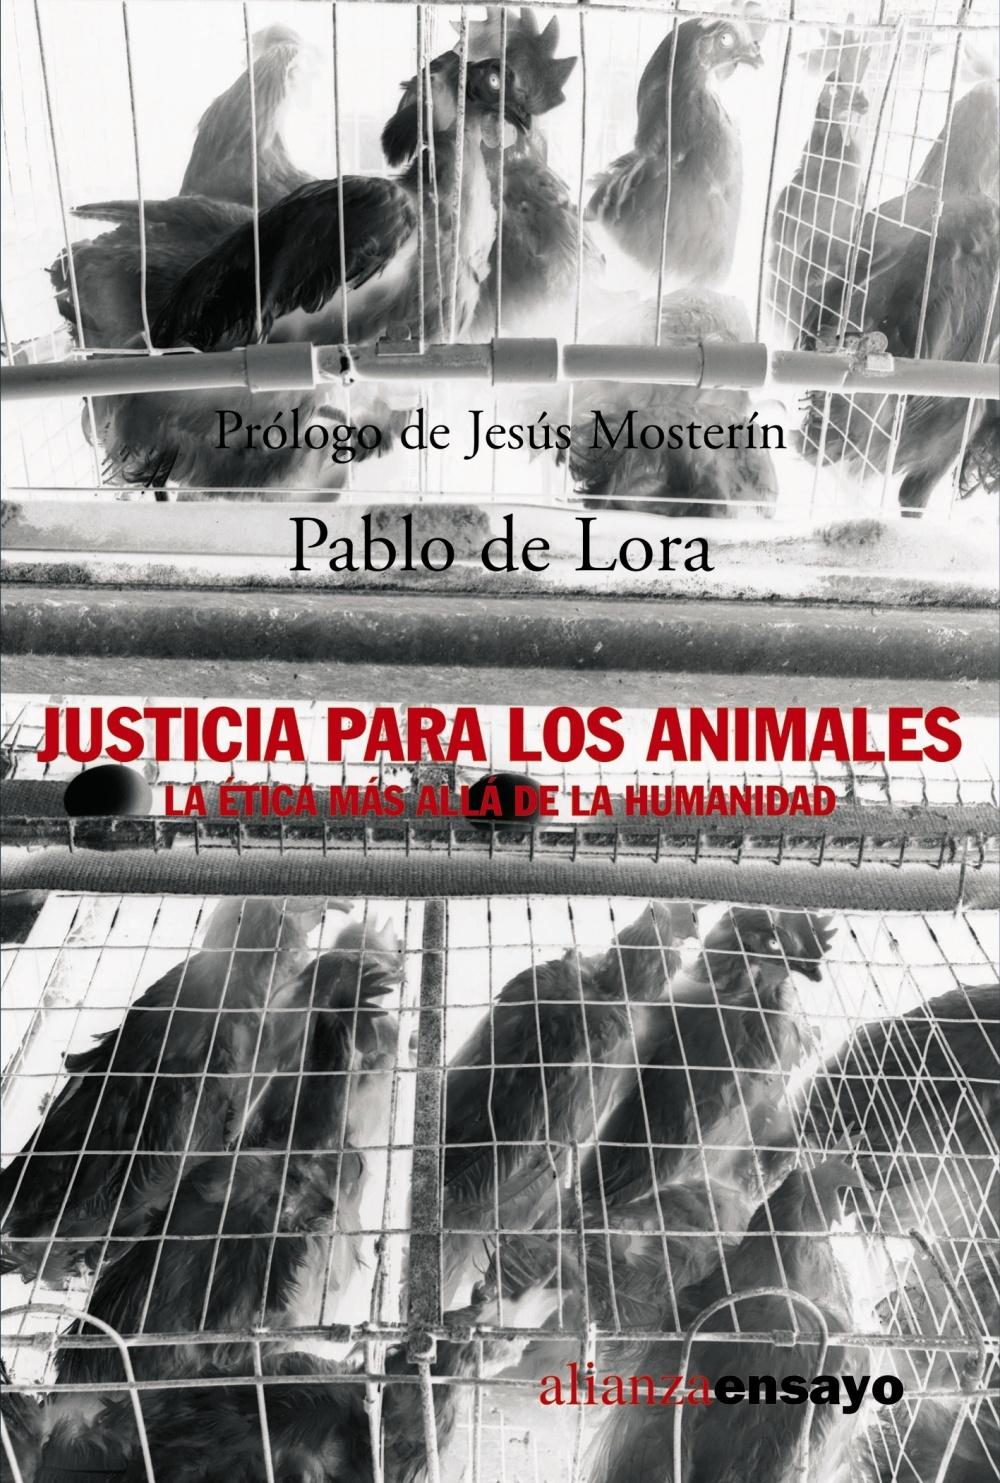 JUSTICIA PARA LOS ANIMALES "La ética más allá de la humanidad". 